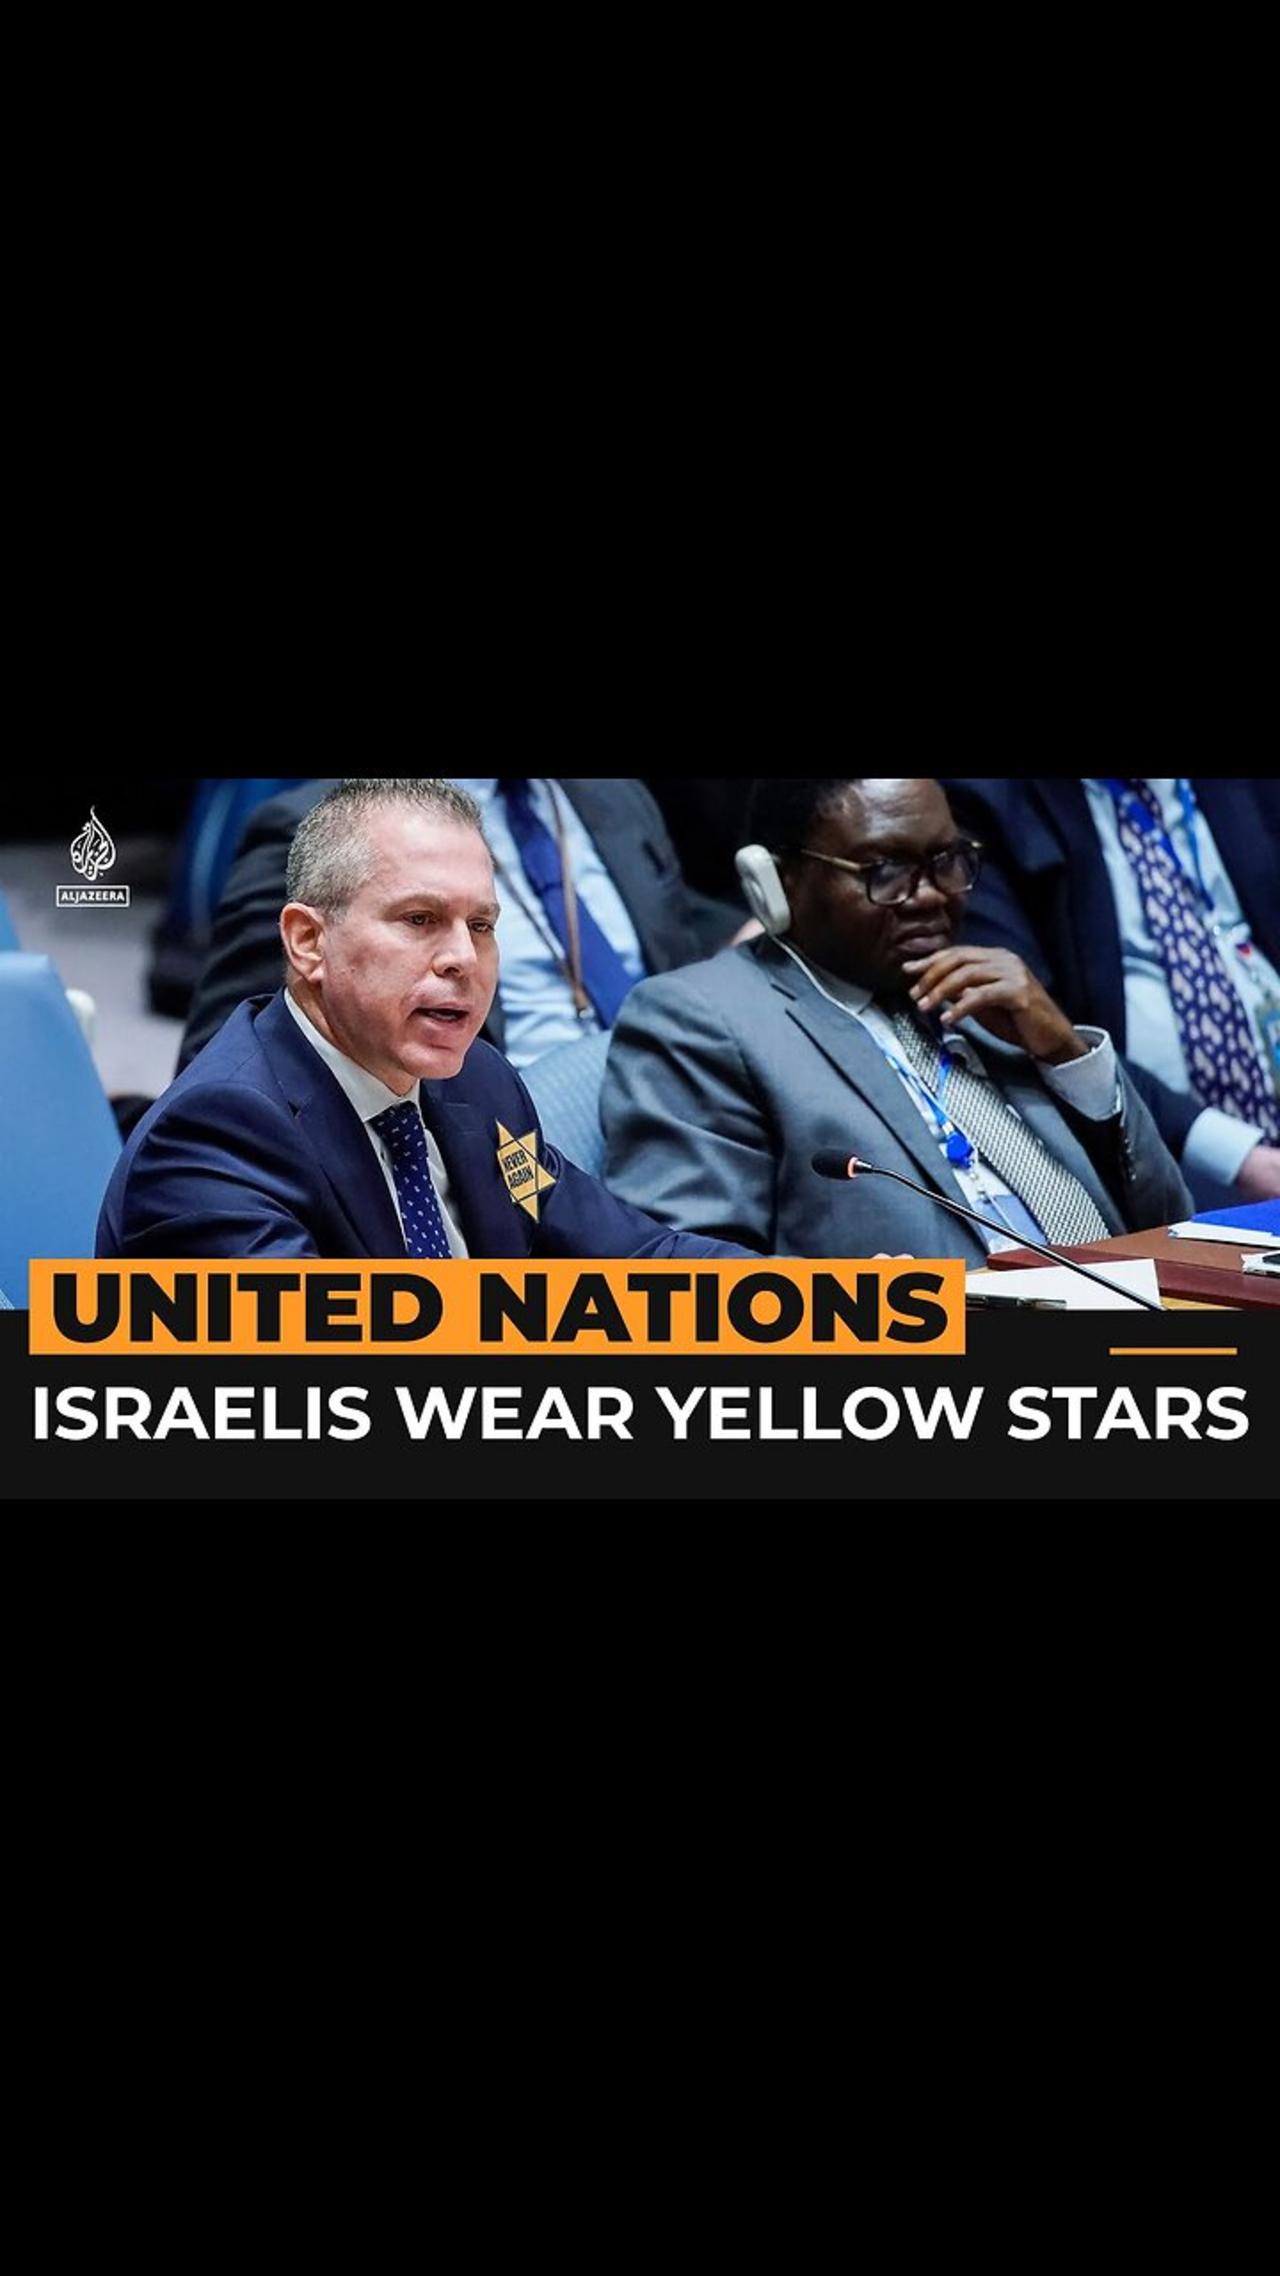 Israeli delegates wear yellow stars at UN meeting on Gaza war - Al Jazeera Newsfeed